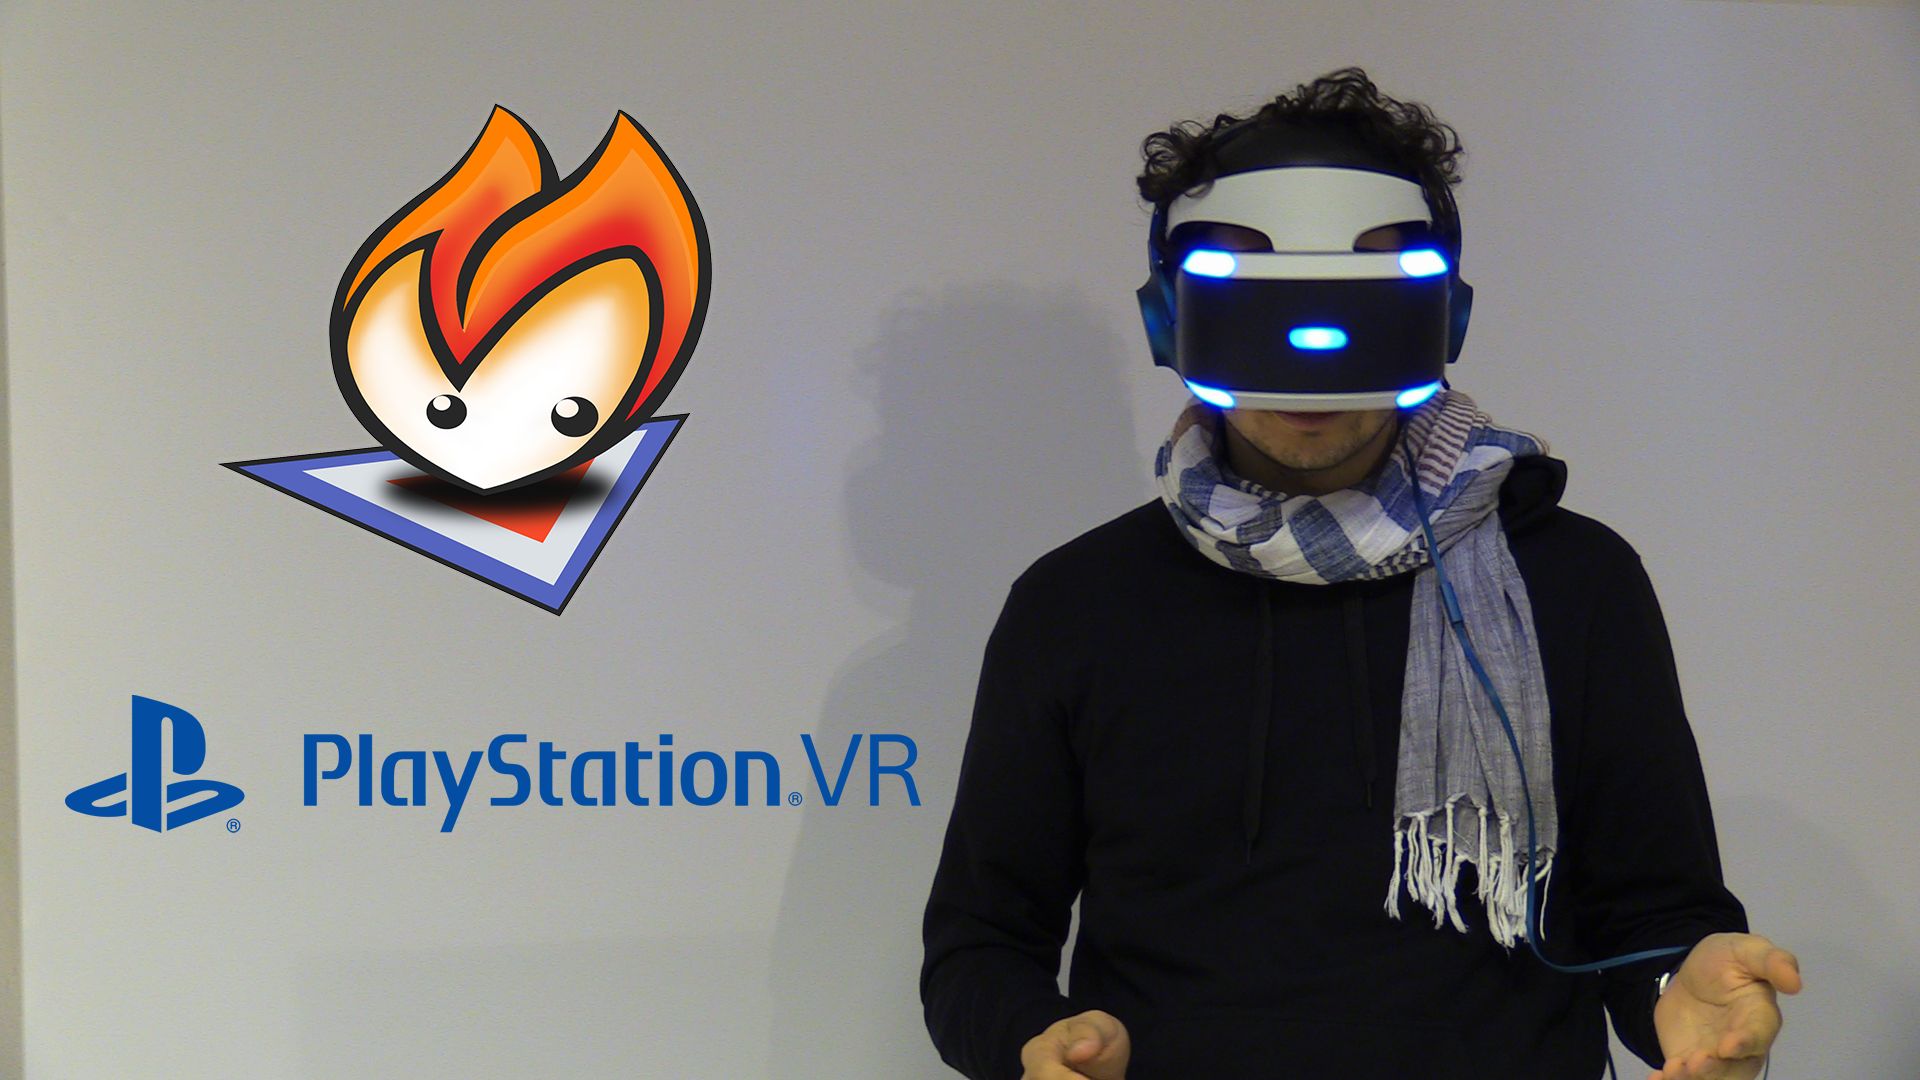 Abbiamo provato per voi i giochi di lancio di Playstation VR